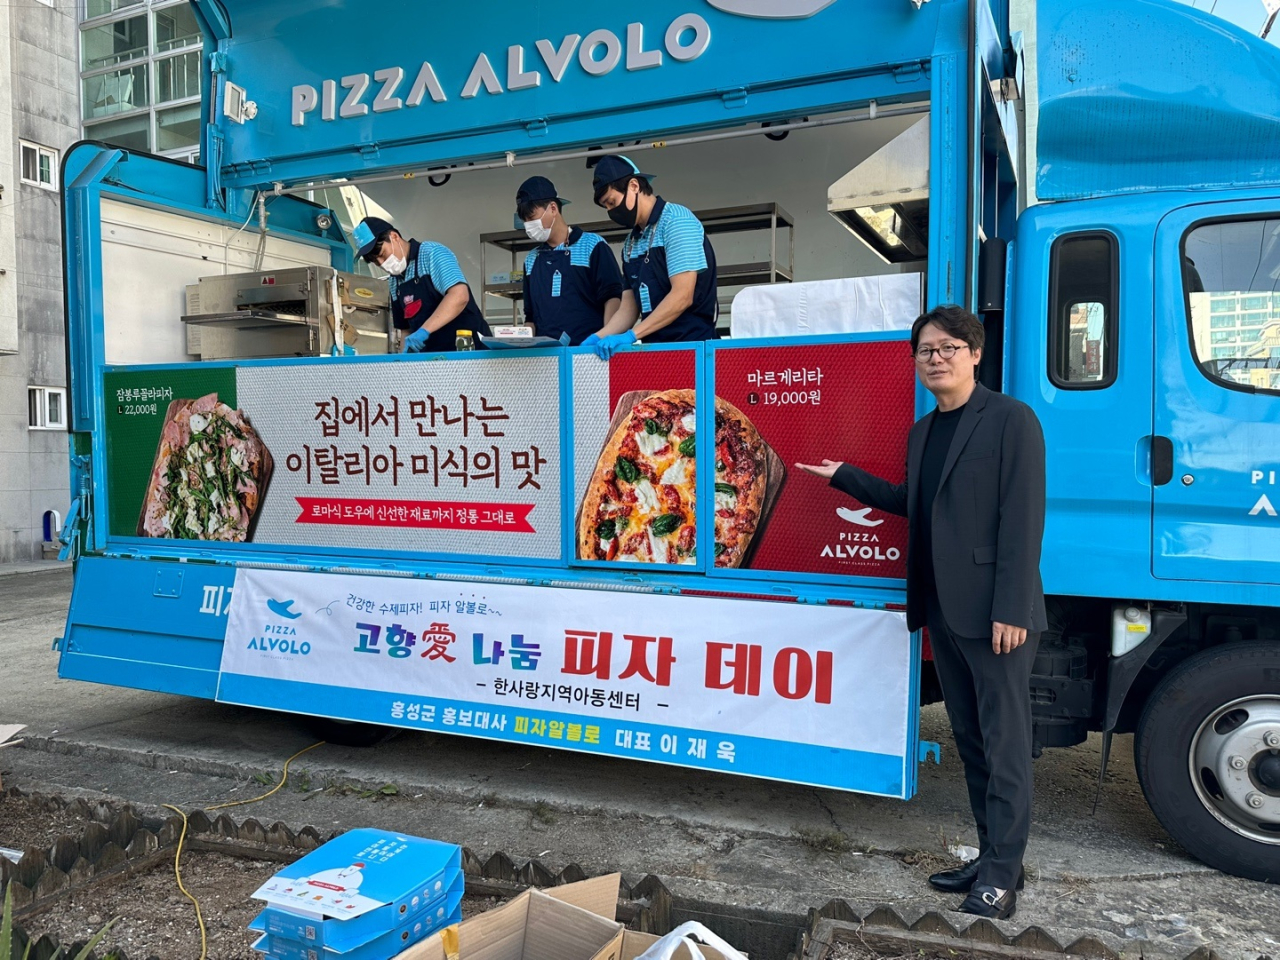 피자 알볼로는 대한민국 주요 피자 브랜드로 마케팅에 투자하는 대신 재료에 투자한다는 신념으로 토핑이 실한 것으로 유명하며 전국에 320개의 매장을 운영하고 있다. Ⓒ홍성군